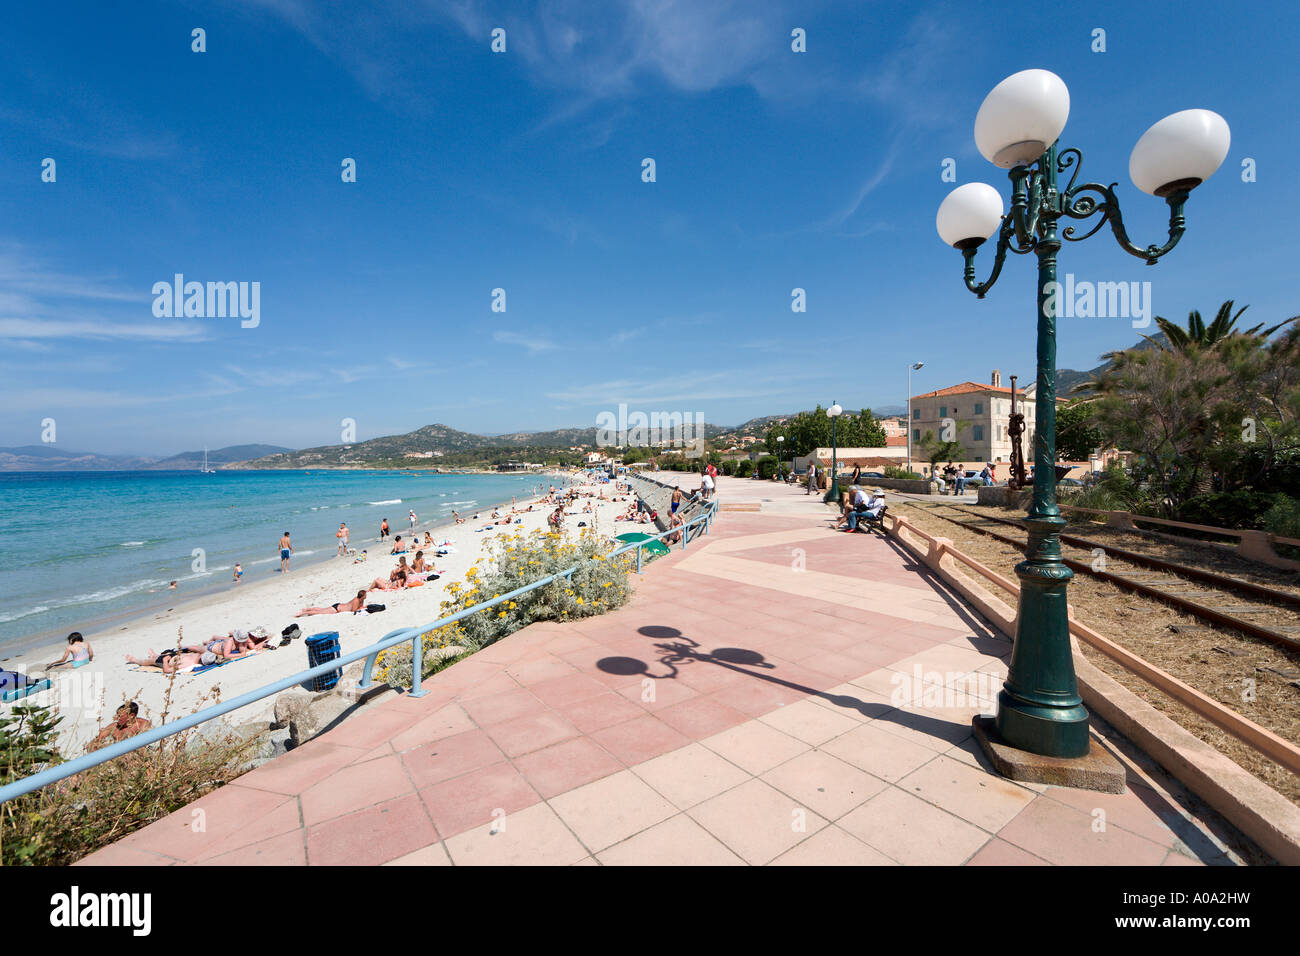 La spiaggia e la passeggiata sul lungomare a L'ile Rousse, La Balagne, Corsica, Francia Foto Stock